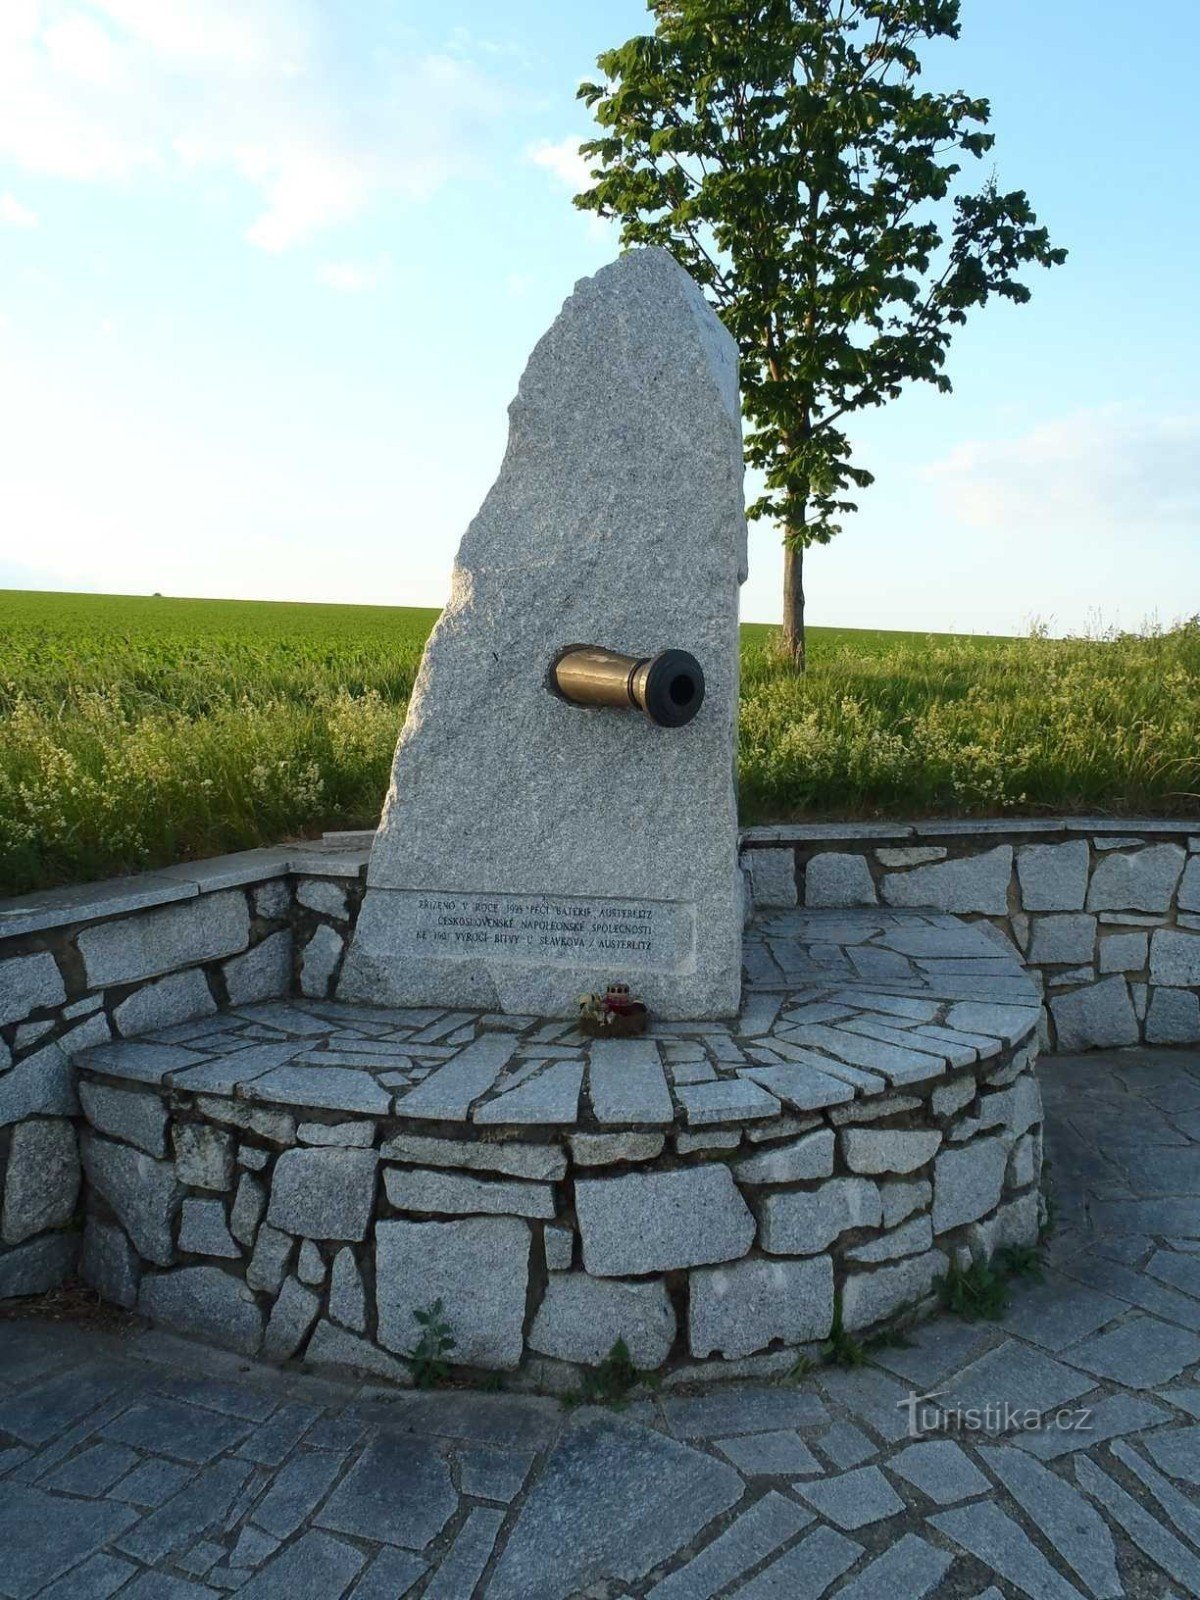 オーストリア砲兵の記念碑 - 25.5.2012 年 XNUMX 月 XNUMX 日